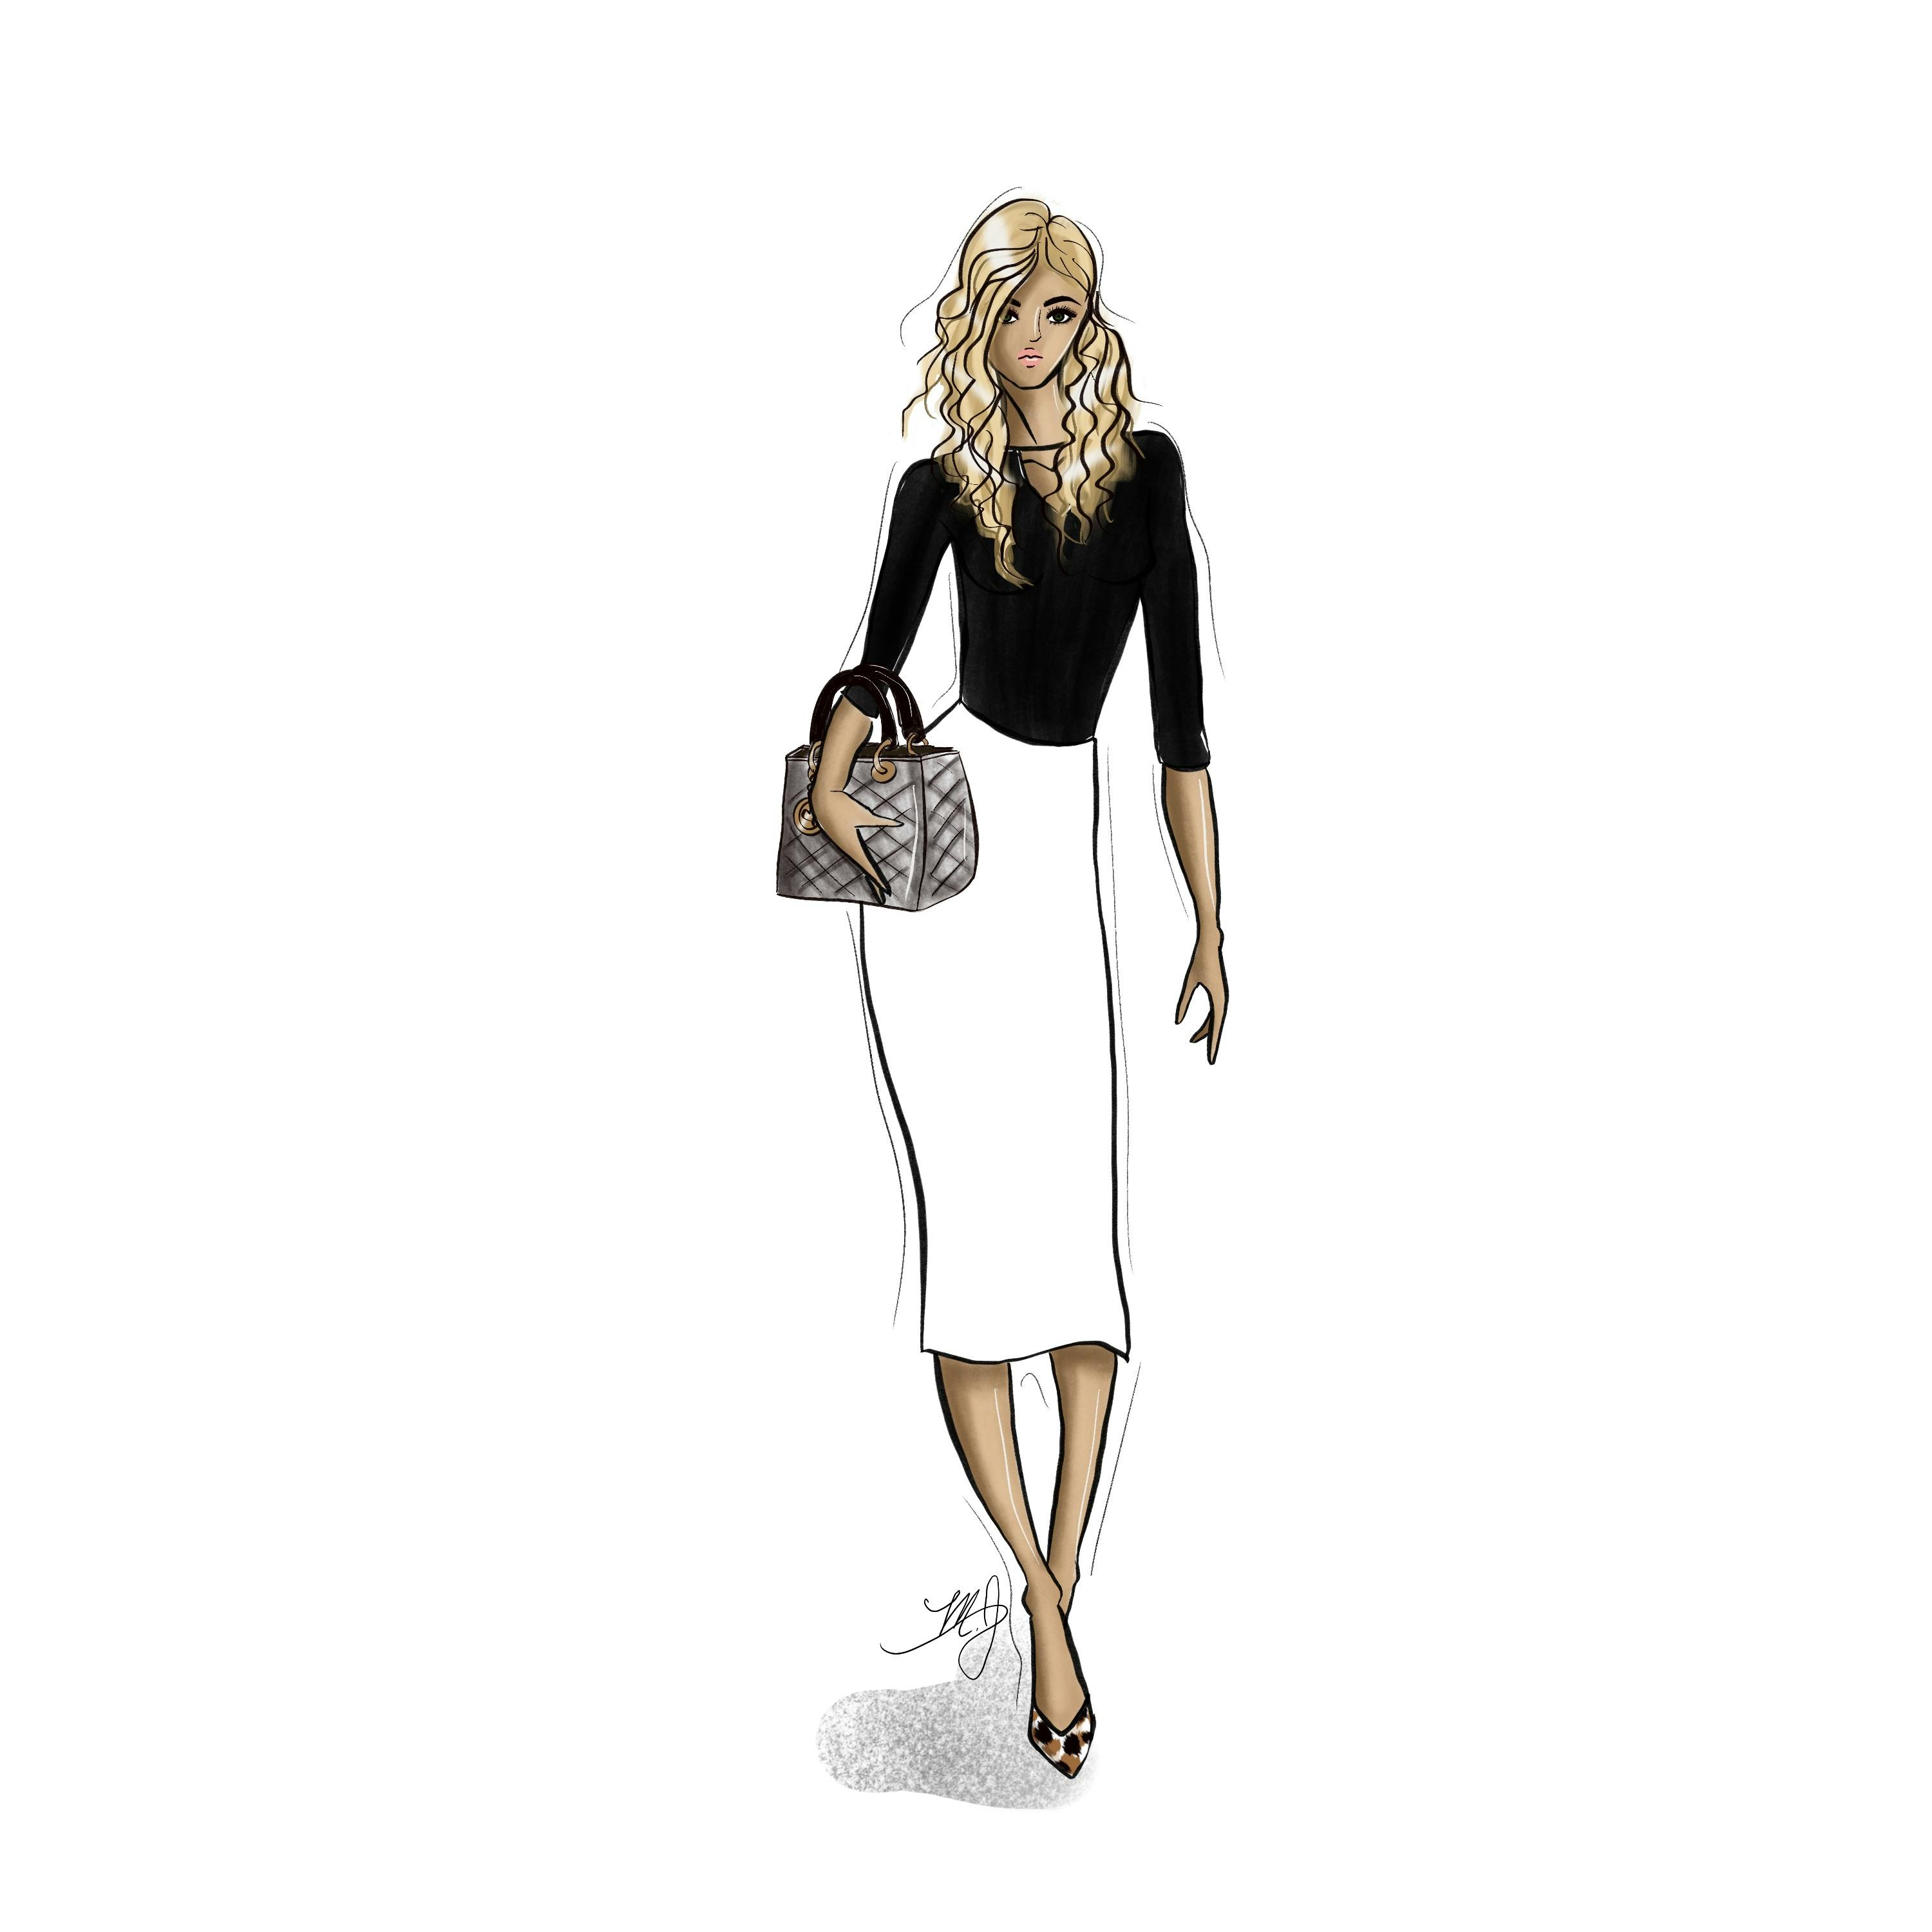 Custom Fashion Figure Illustration - Single Figure